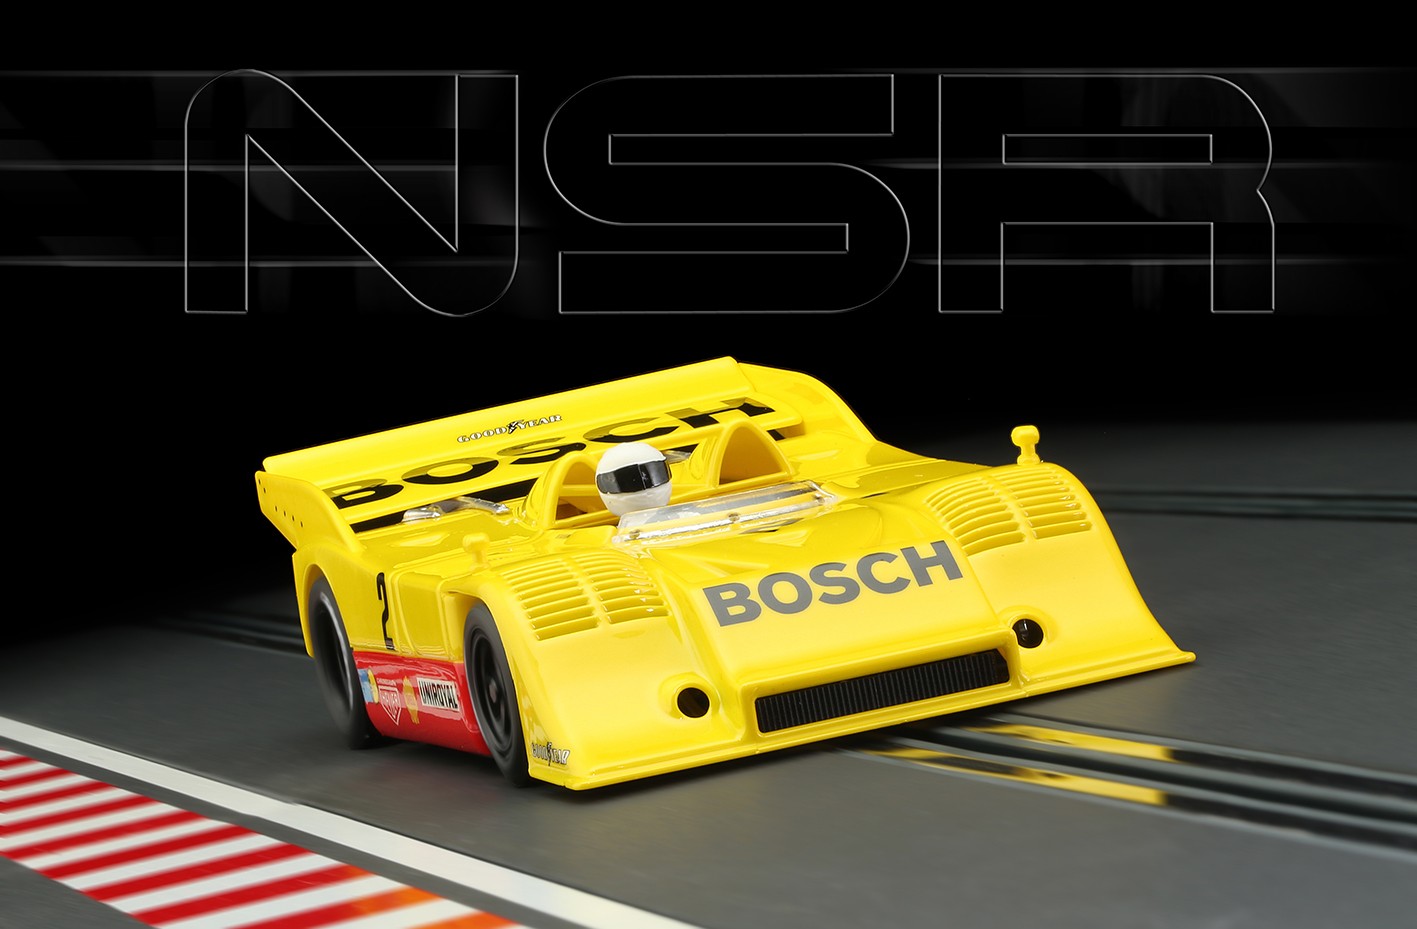 NSR - Porsche 917/10K - Kauhsen Team - Bosh Nurburgring Interseria 1973 - 0185SW